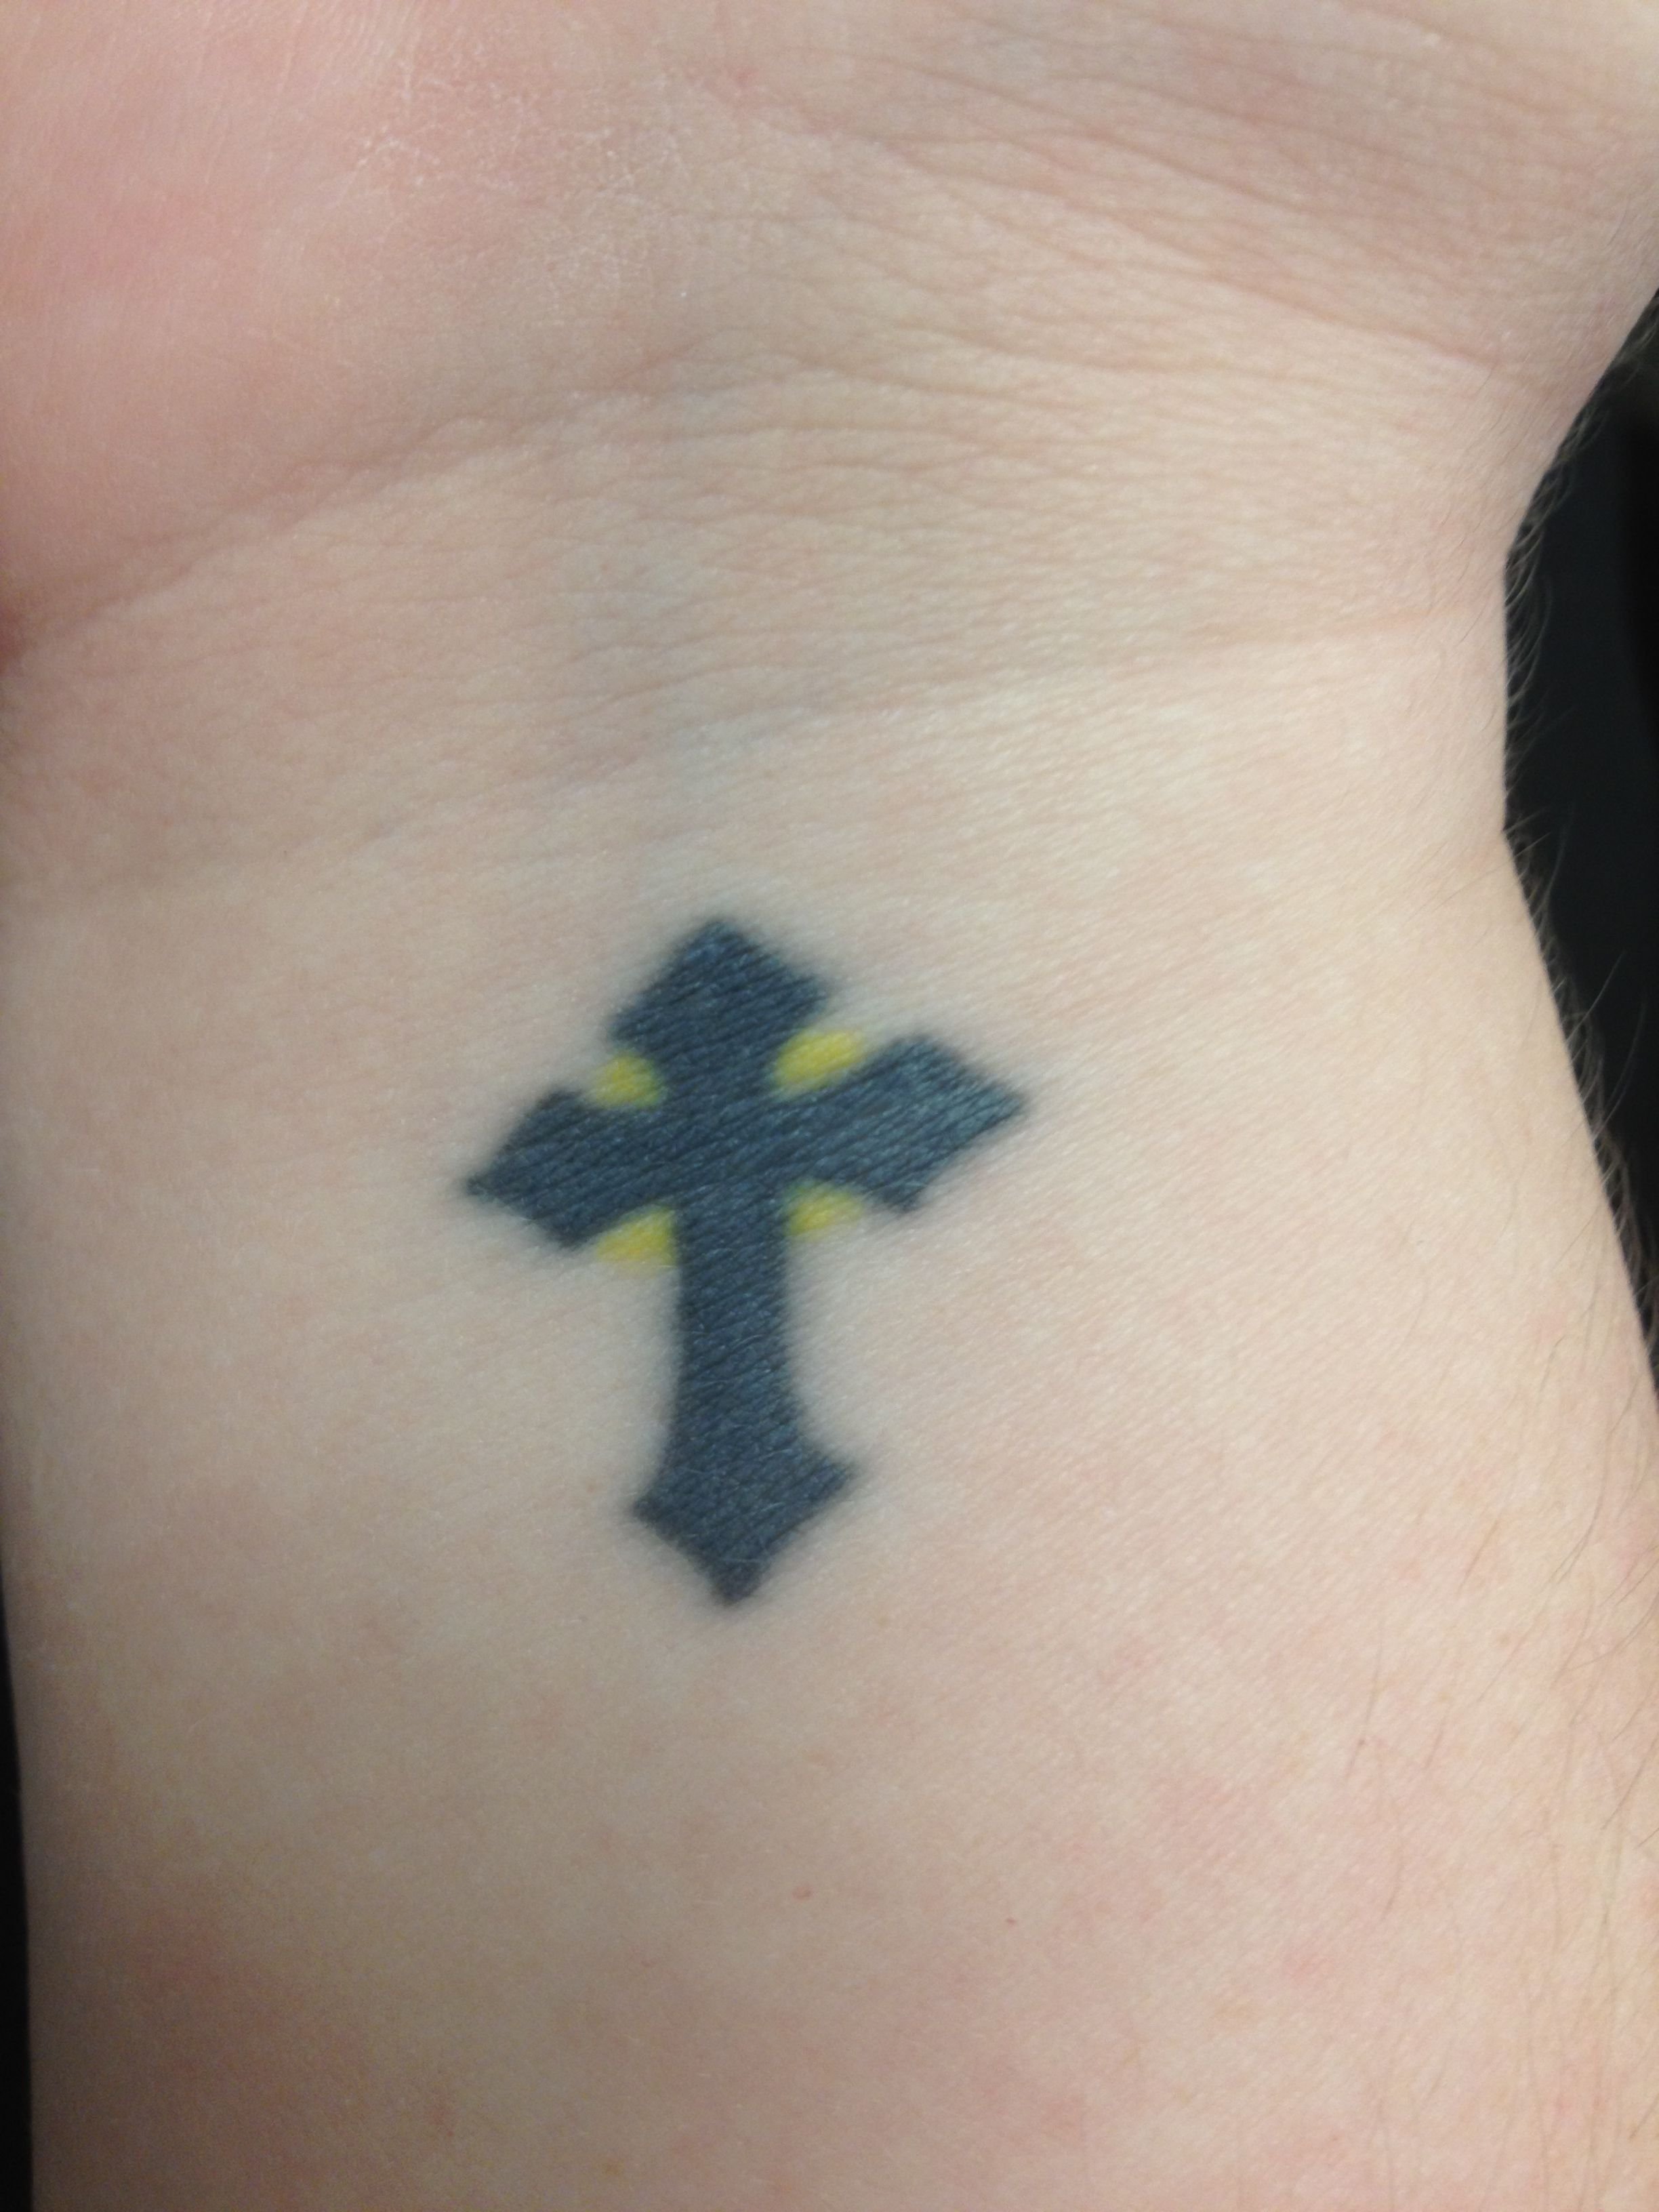 Маленький крест на руке тату